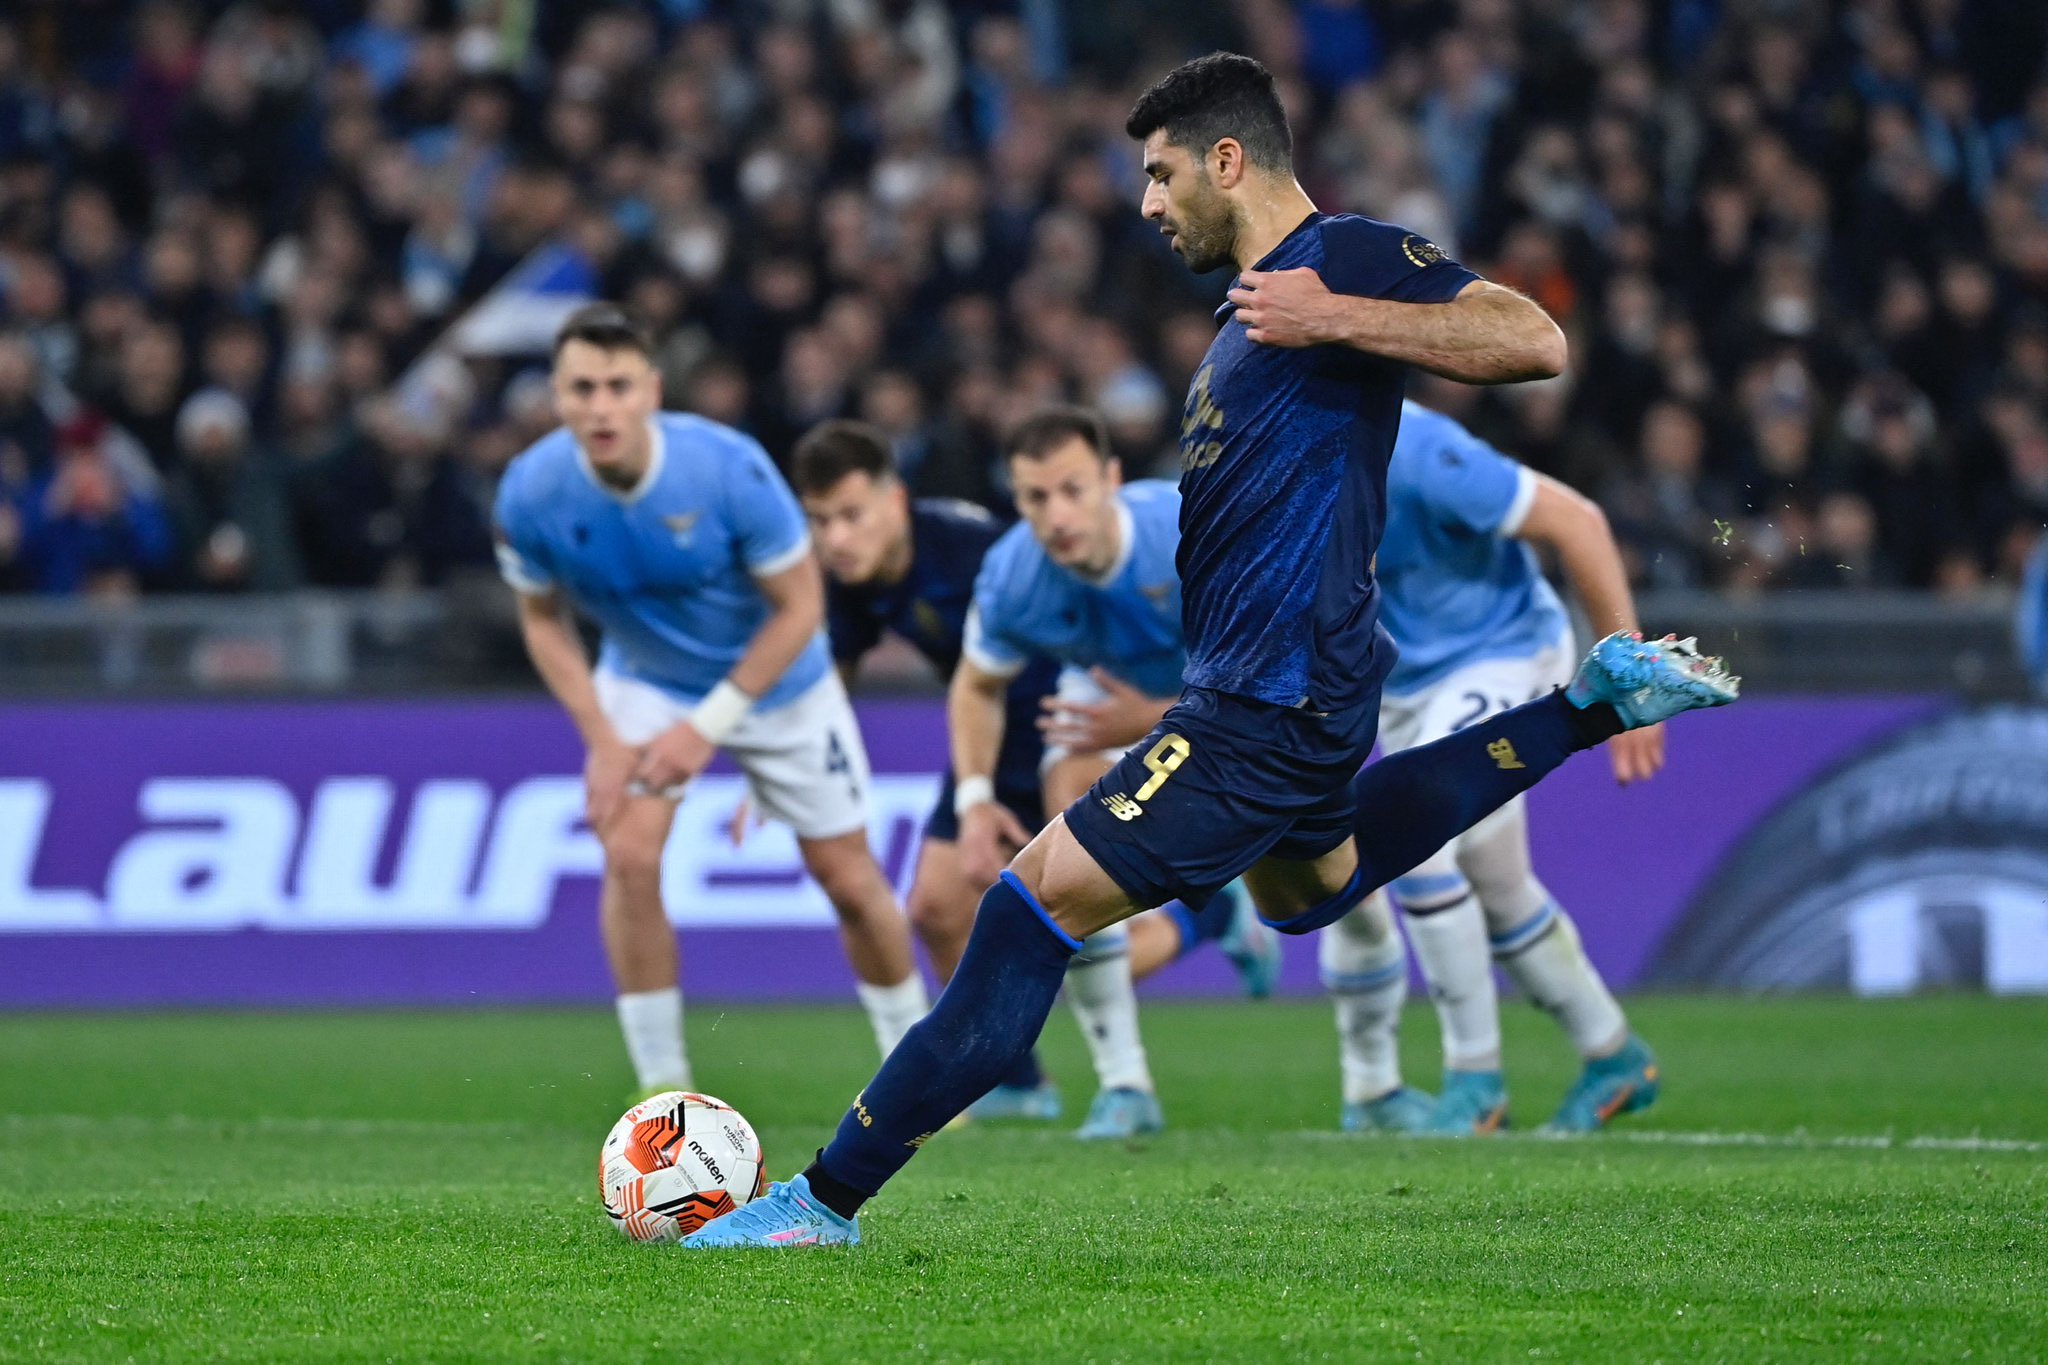 Europa League : Le FC Porto élimine la Lazio et file en huitième de finale